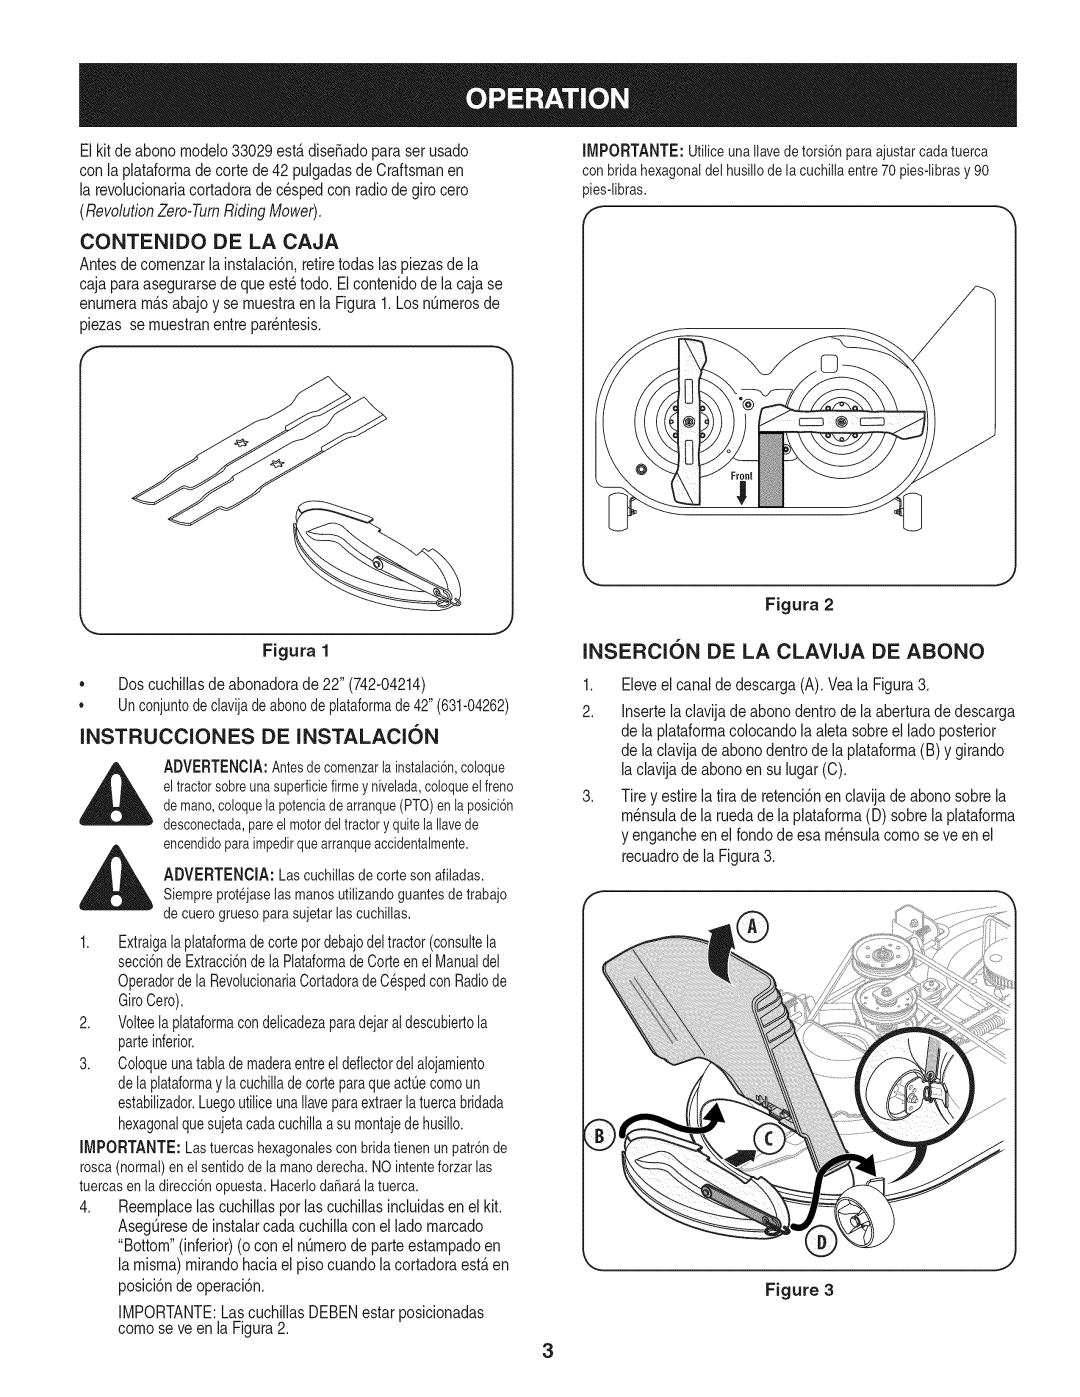 Craftsman 33029 manual Contenido De La Caja, Instrucciones De Instalacion, Insercion De La Clavija De Abono, Figura 